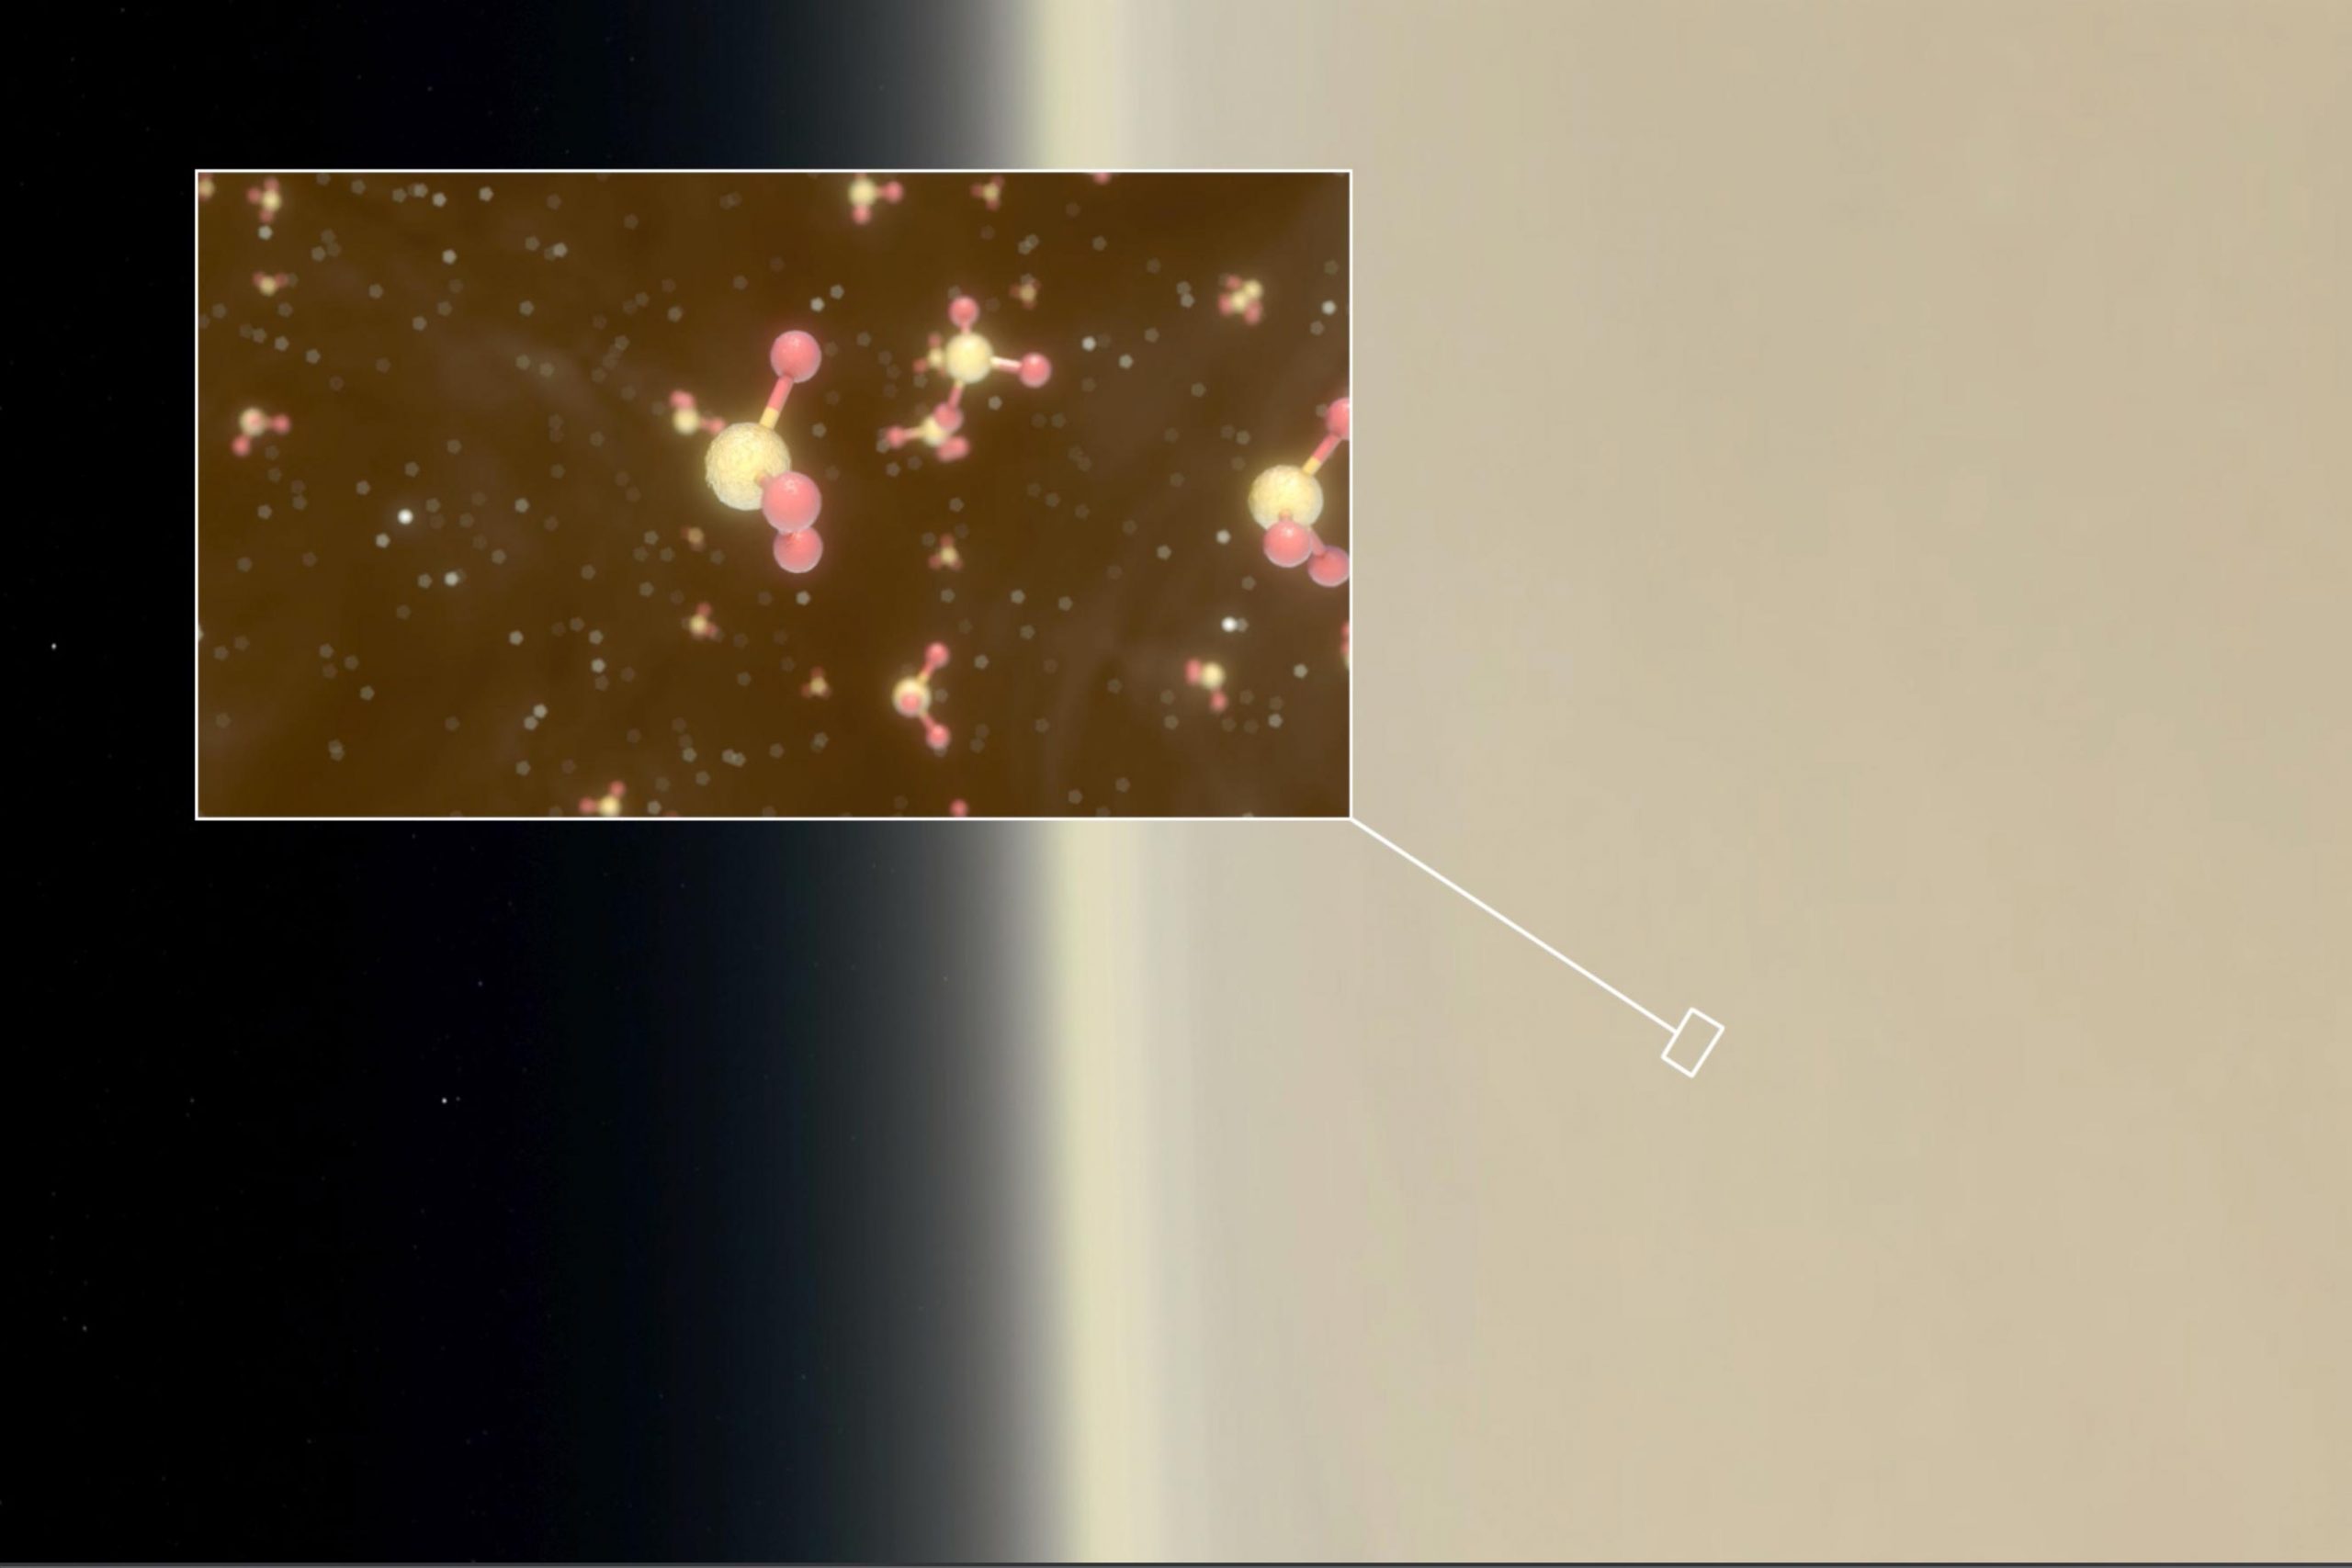 Hình ảnh mô tả phosphine trong các đám mây của sao Kim. Ảnh: ESO.